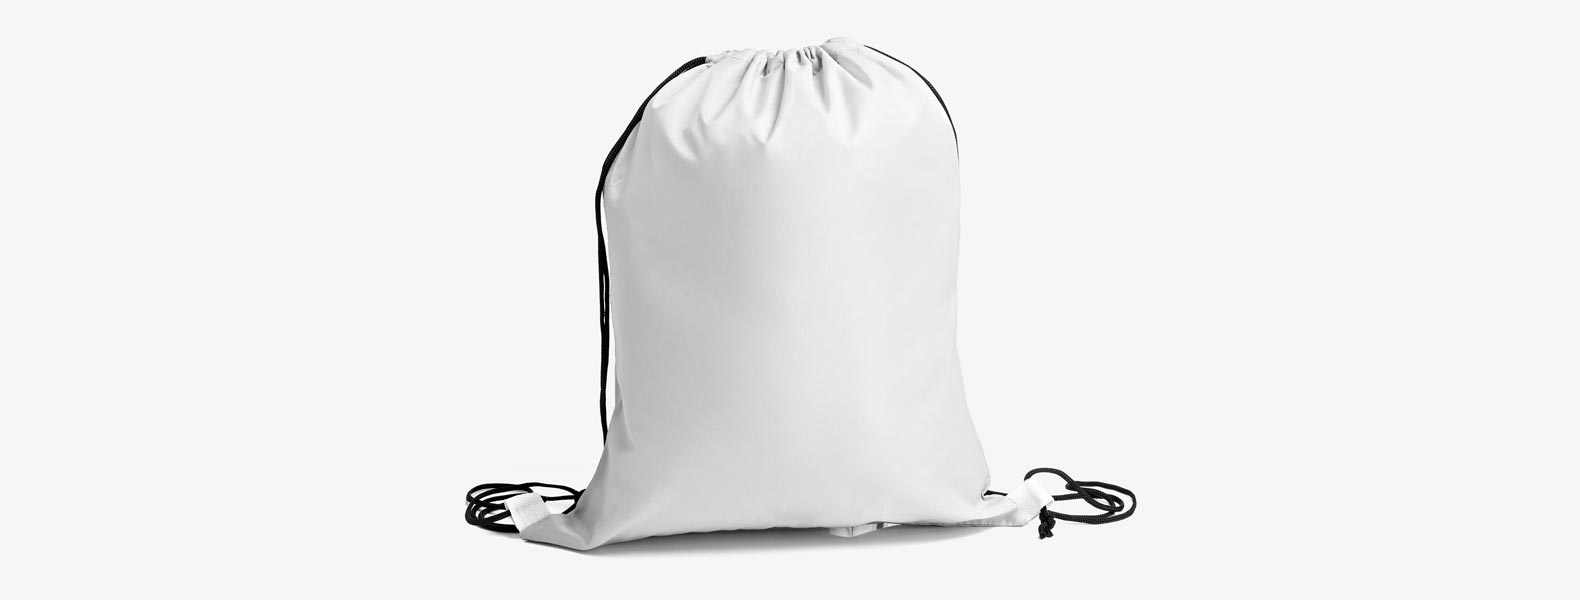 Mochila sacola em Nylon 420 branca. Conta com alças para as costas tipo cordão e cantos reforçados.